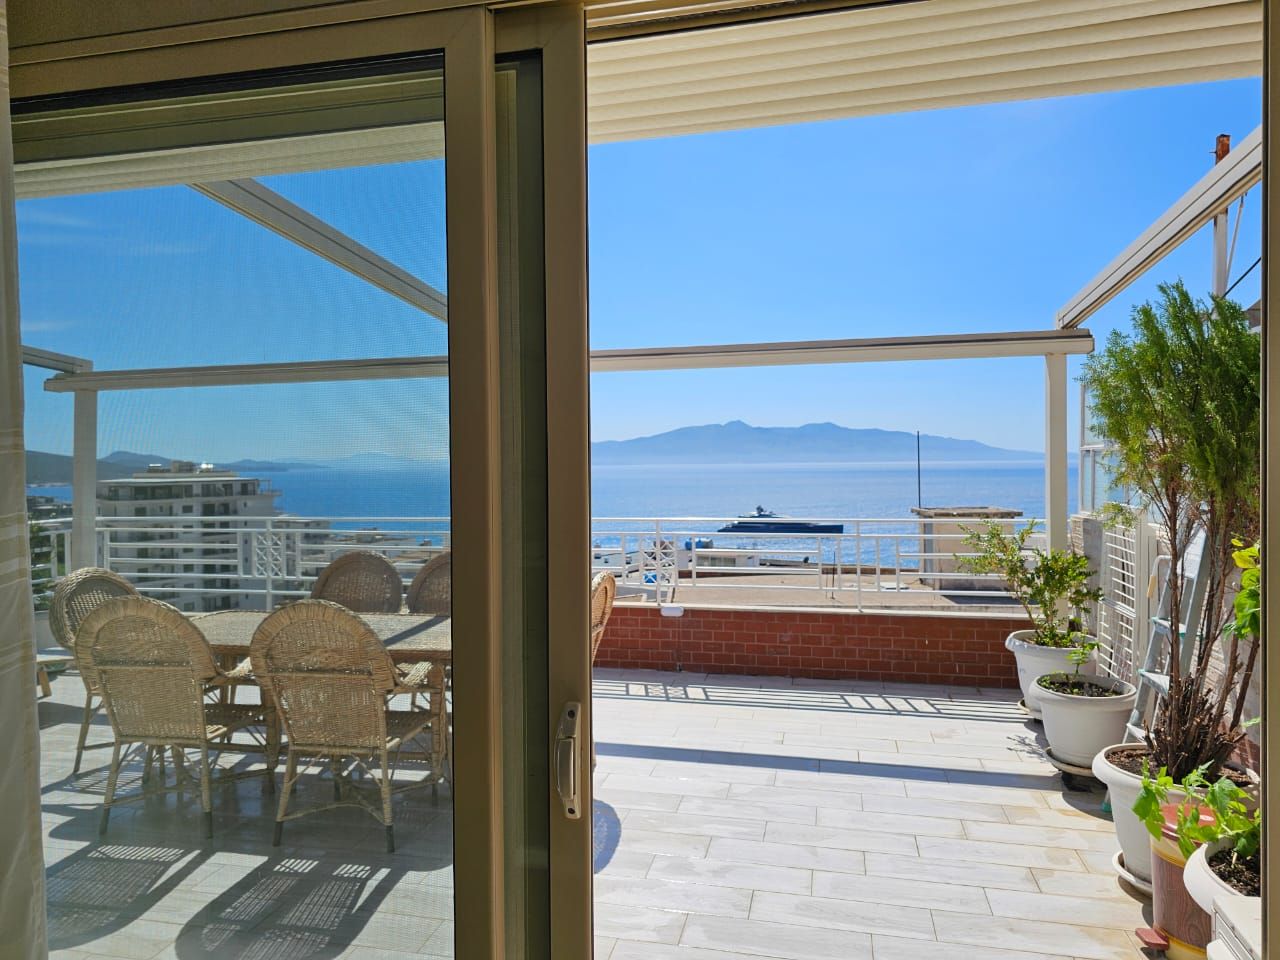 Albánia Eladó ingatlan Sarandában, két hálószobával, modern rezidenciában, nagy panorámás kilátással a tengerre